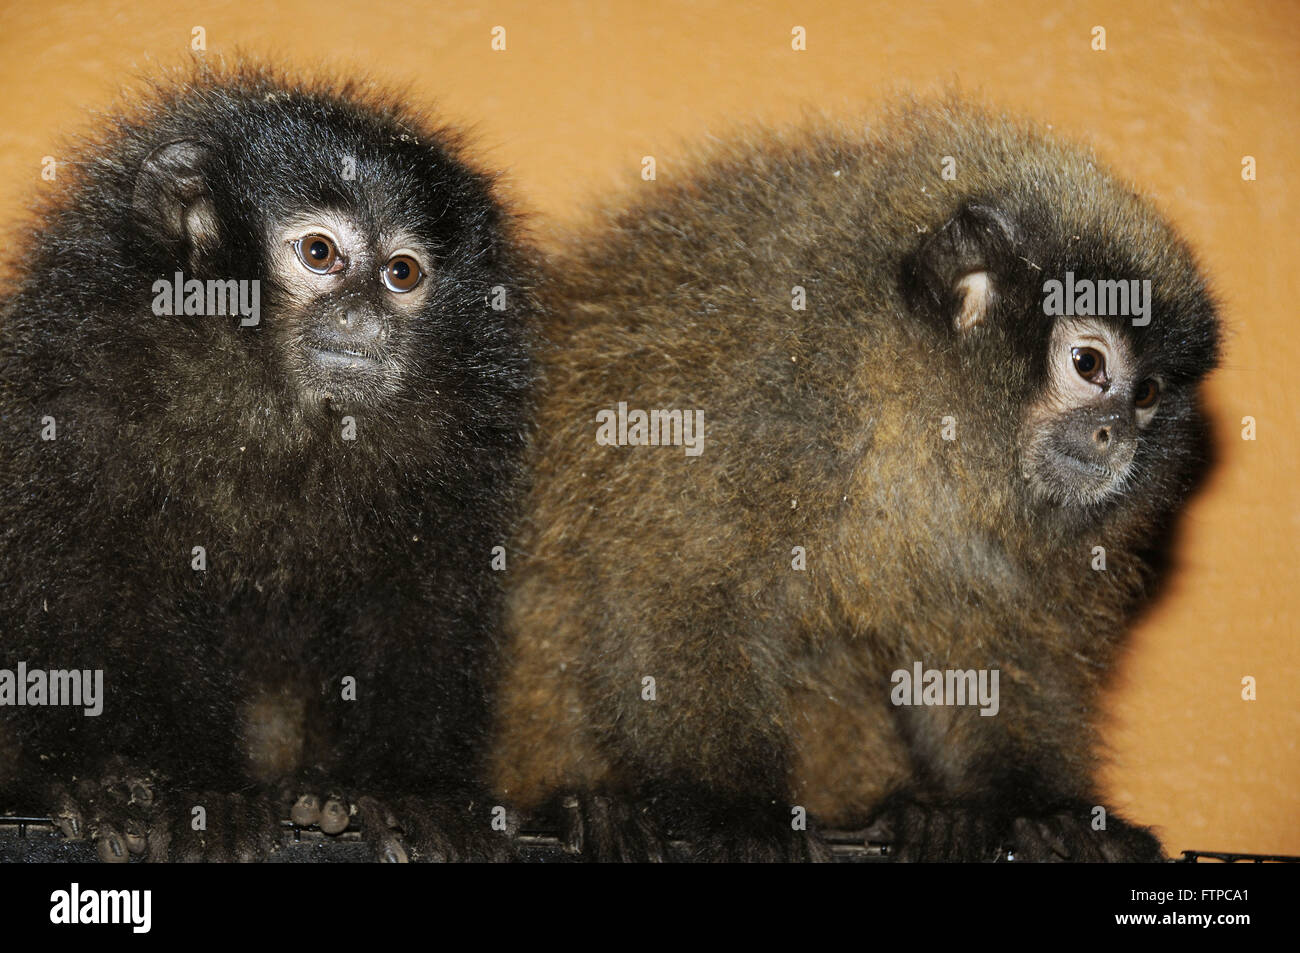 Titi - forest primati del genere Callicebus - Zooparque Itatiba Foto Stock